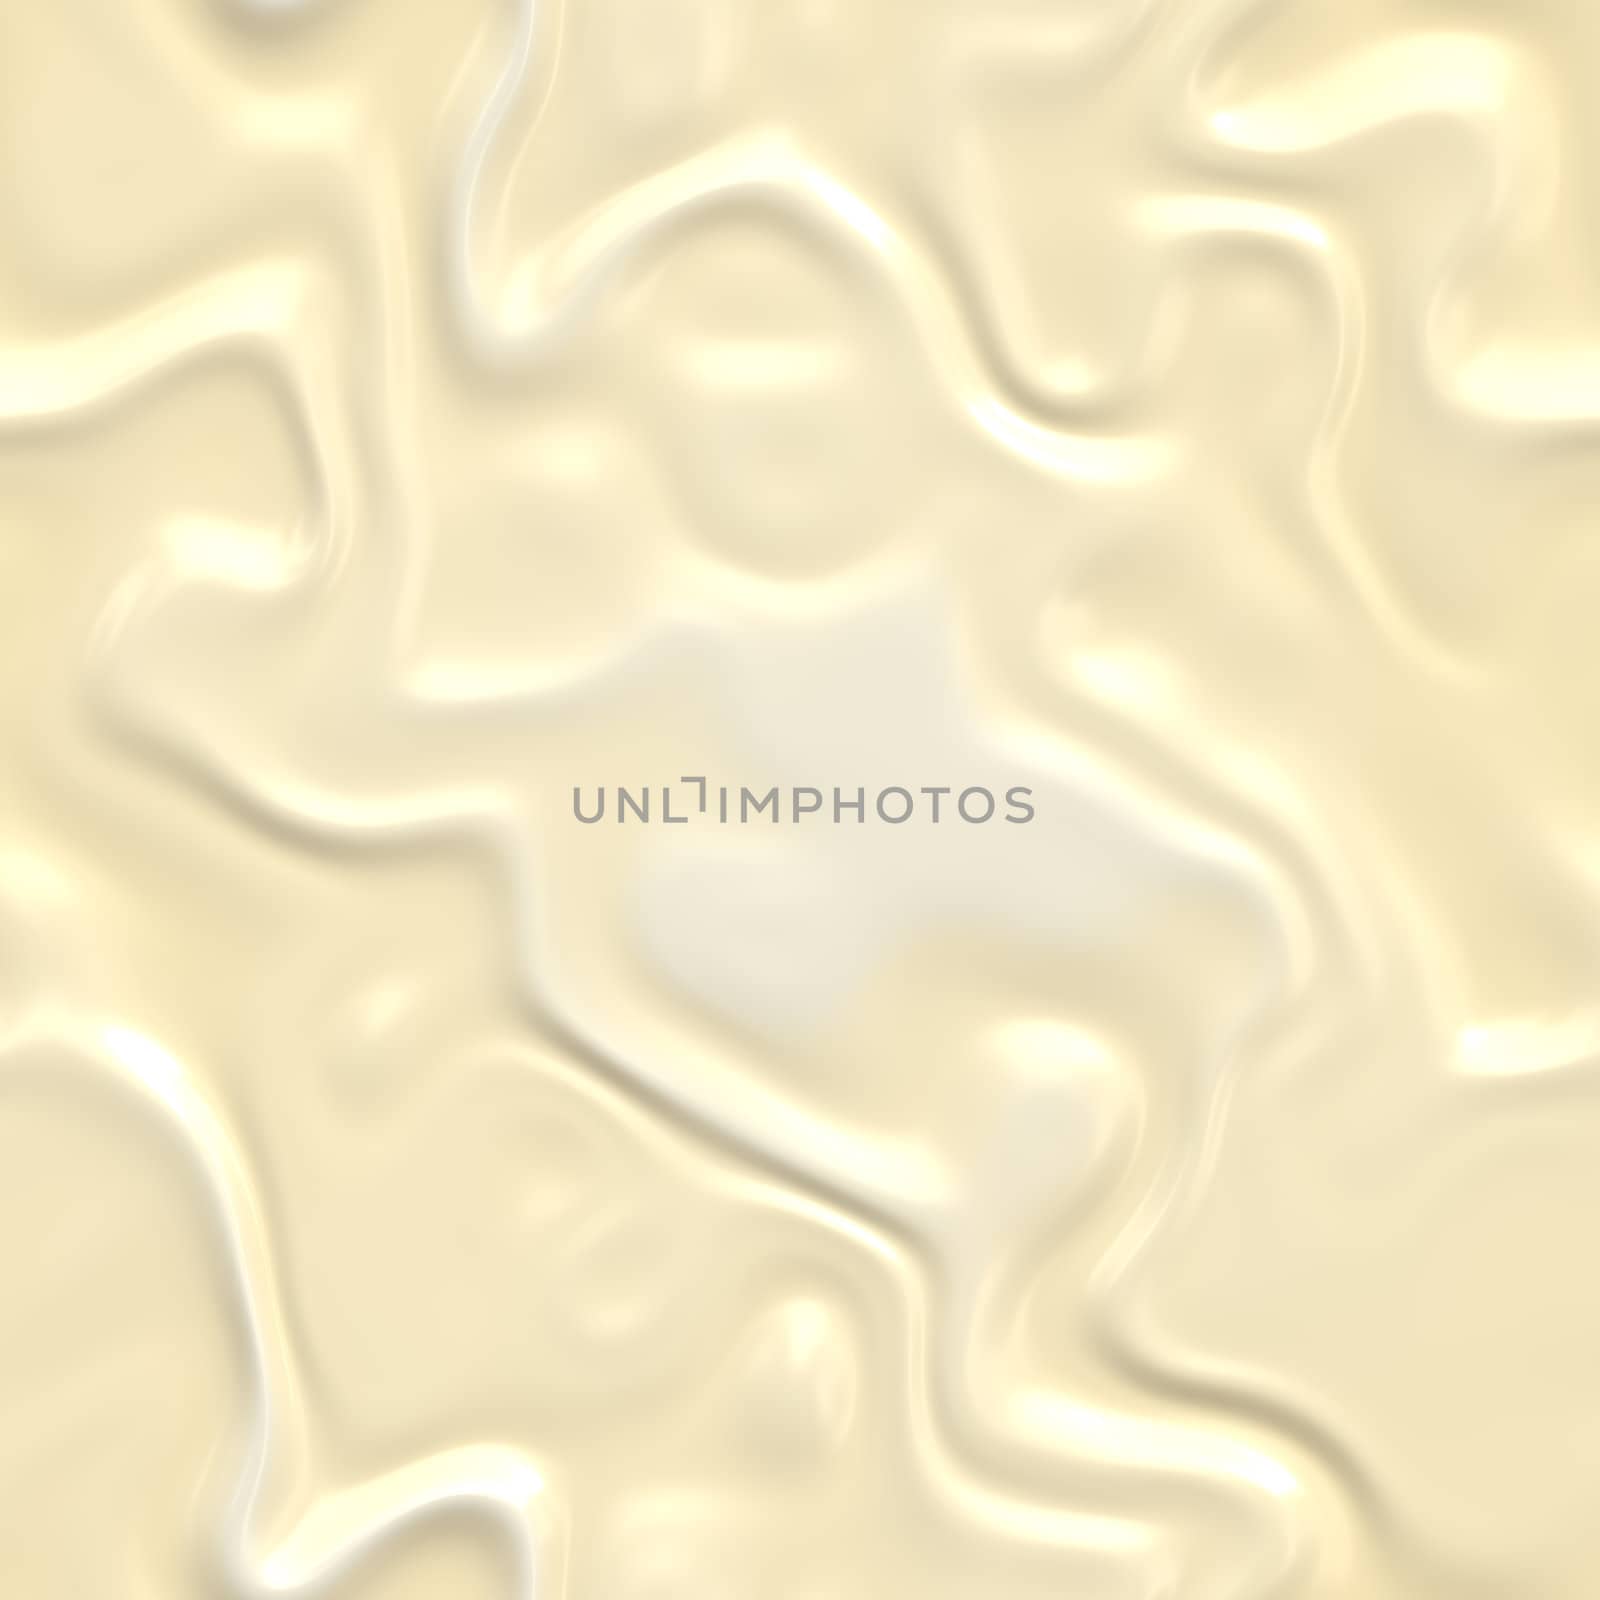 beautiful creamy white melting chocolate background image